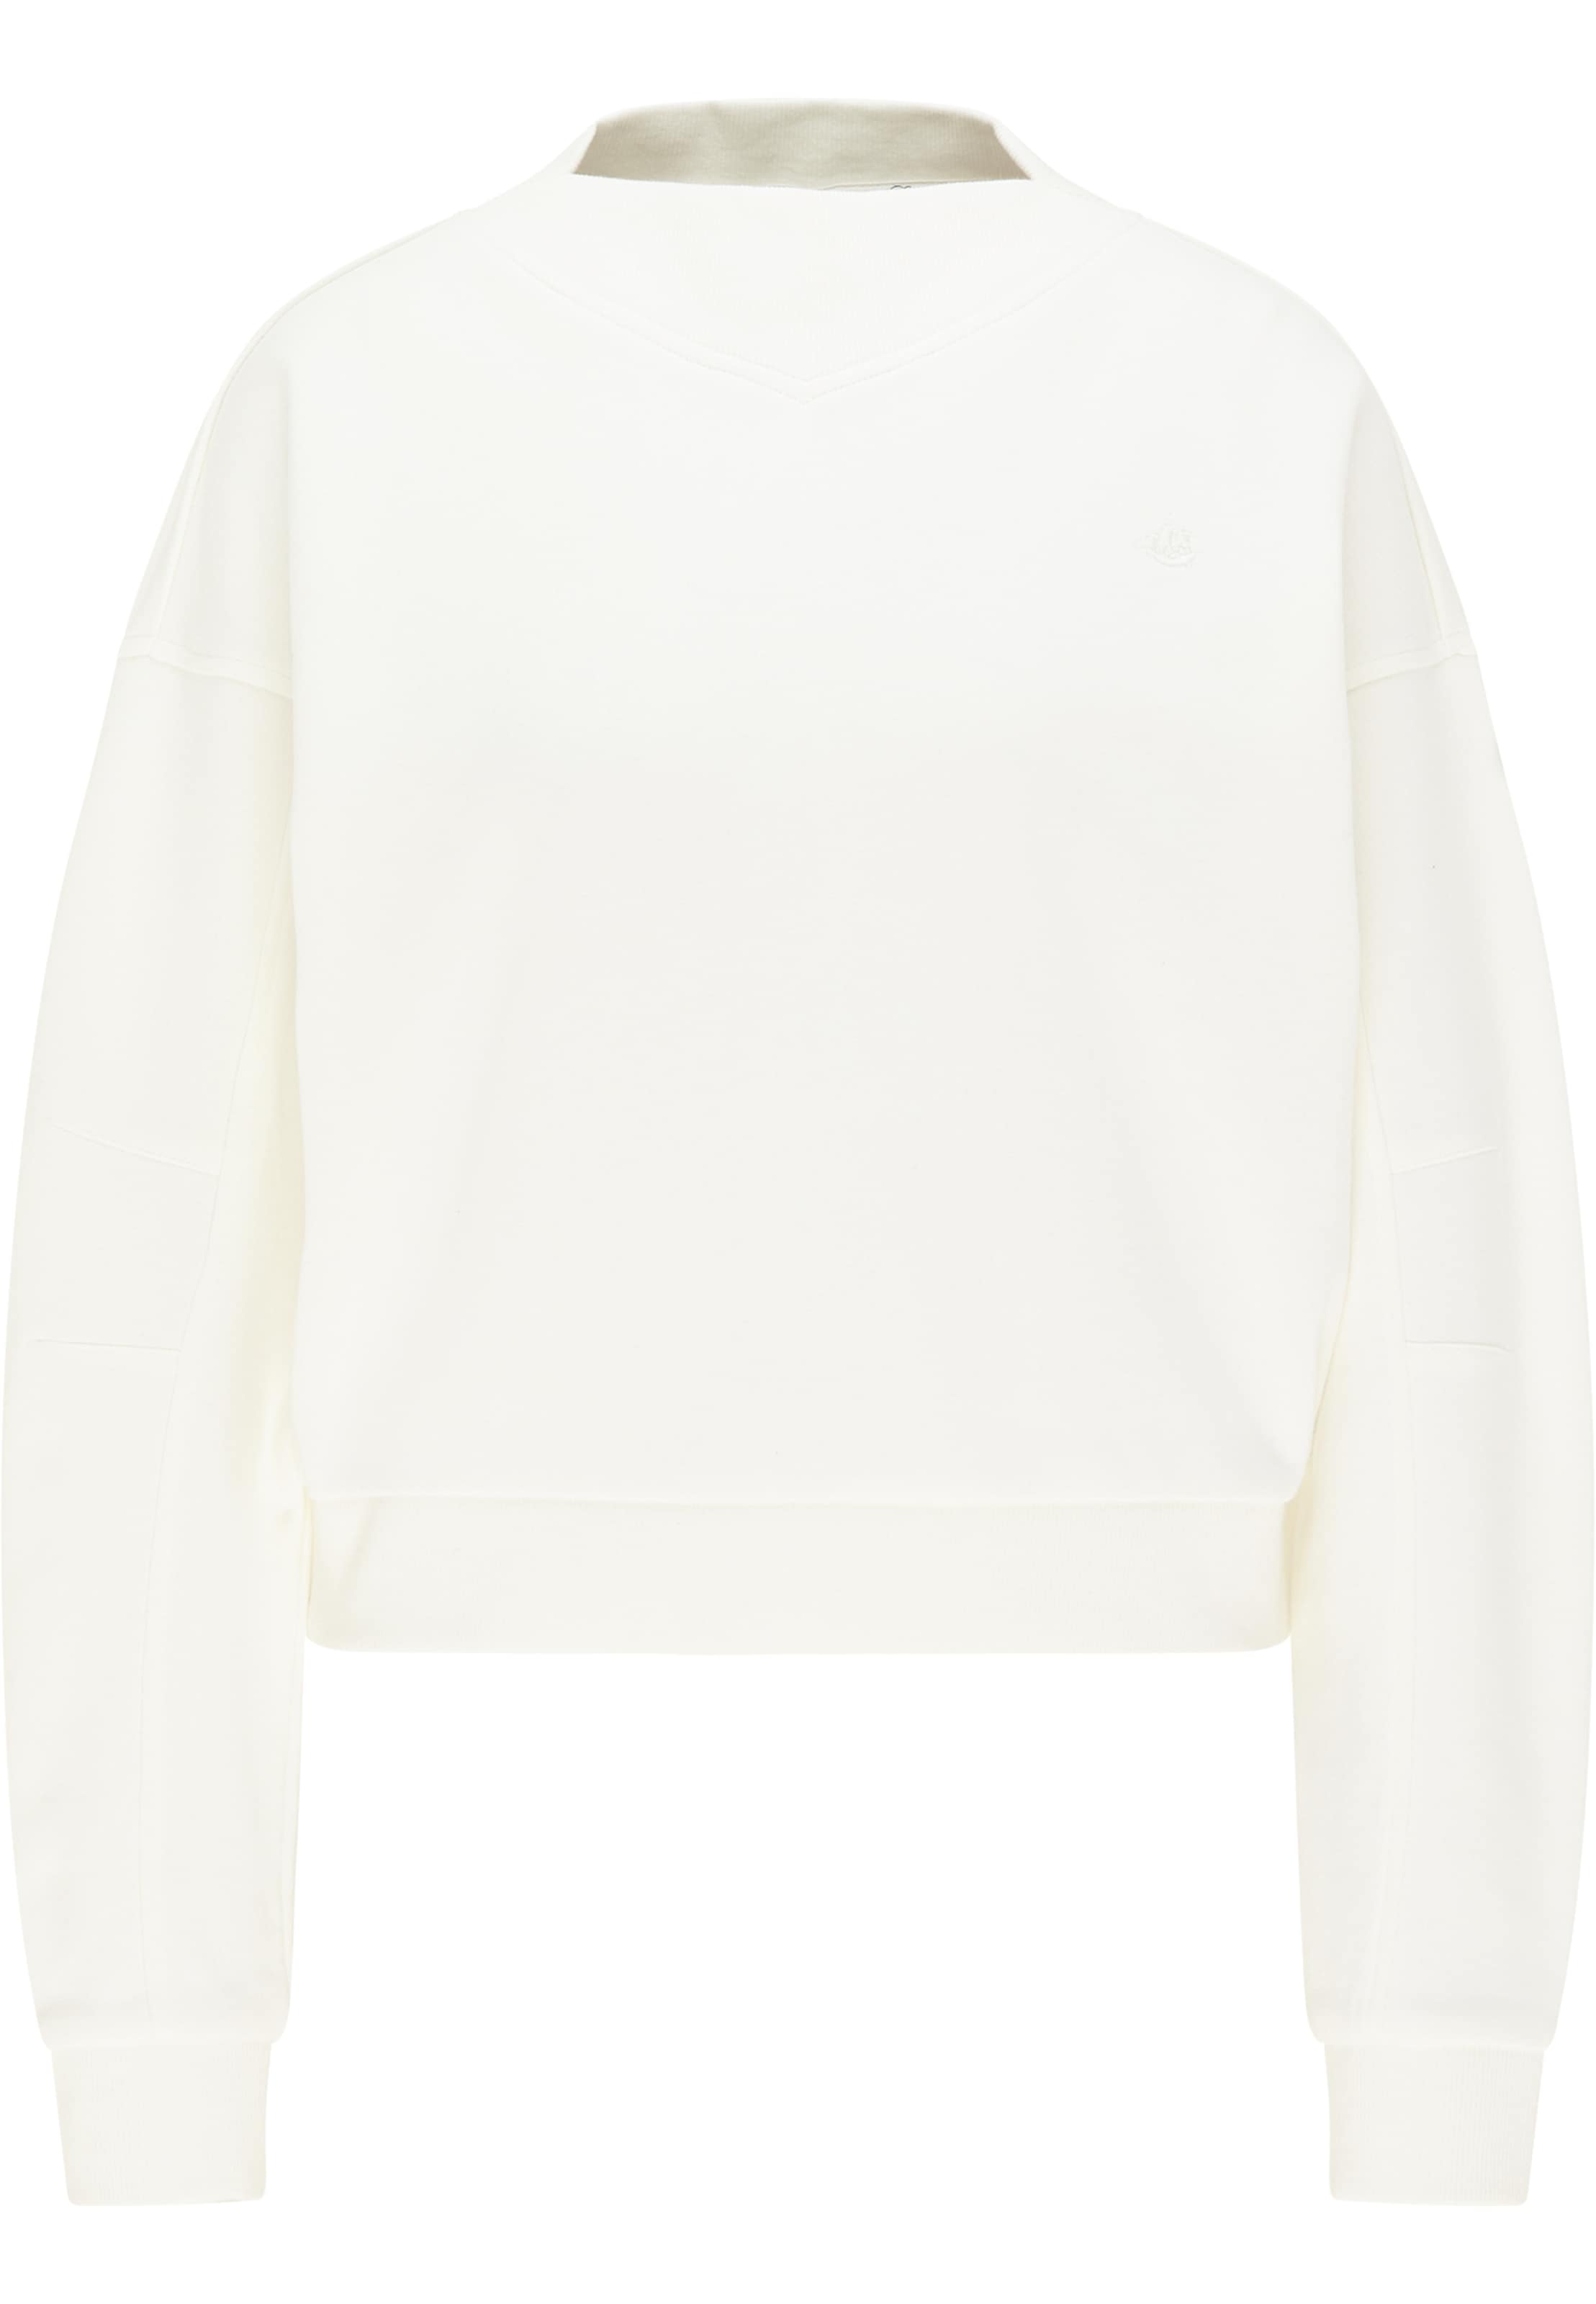 Frauen Sweat DreiMaster Vintage Sweatshirt in Weiß - BL05134